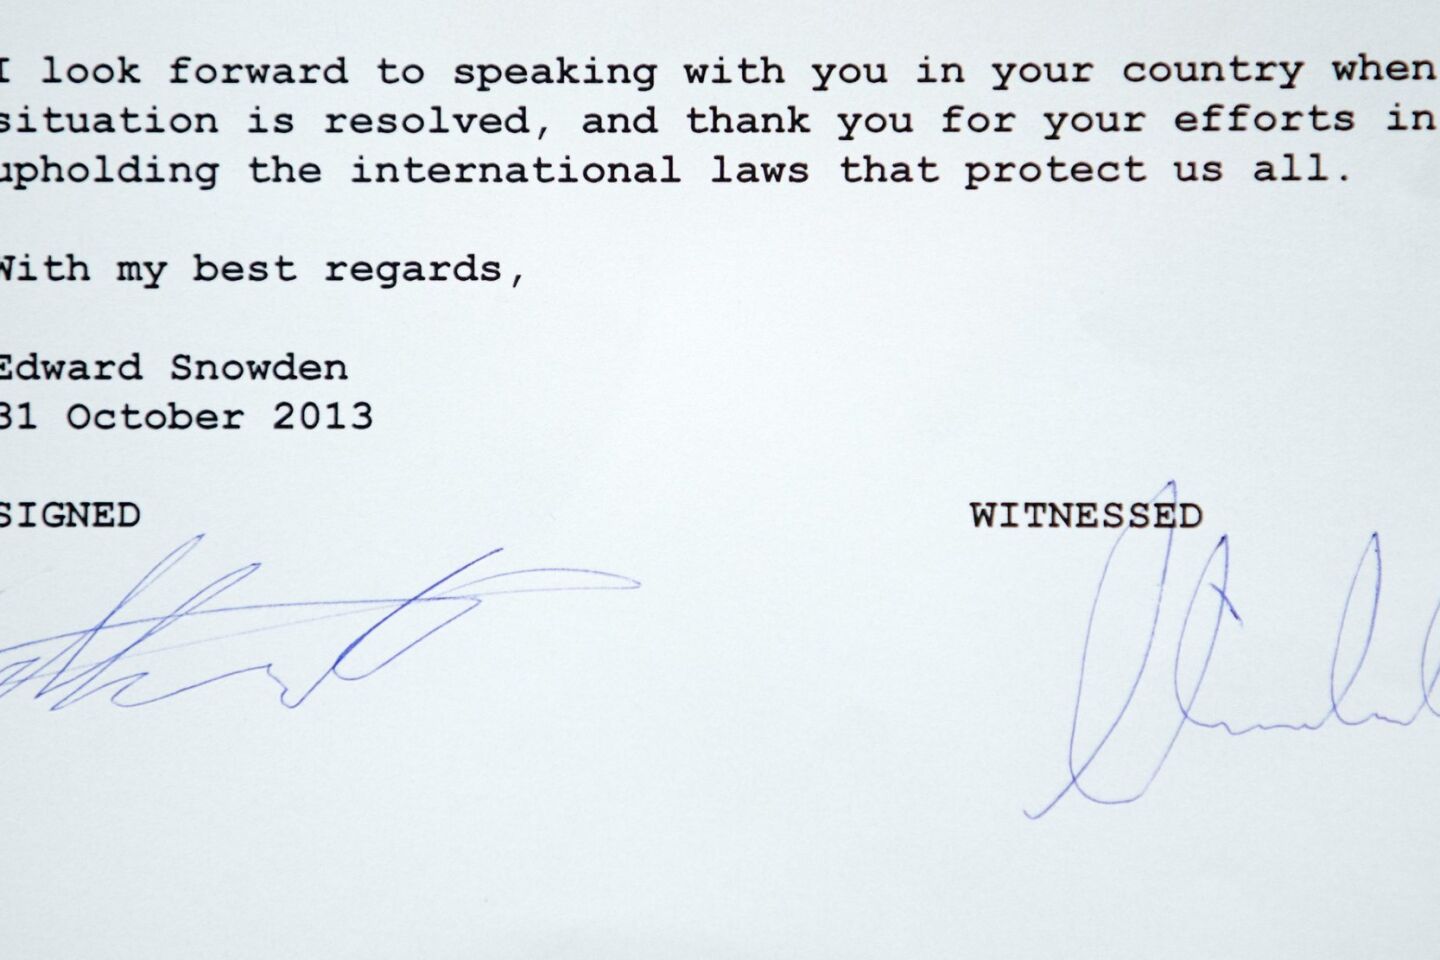 Snowden's signature